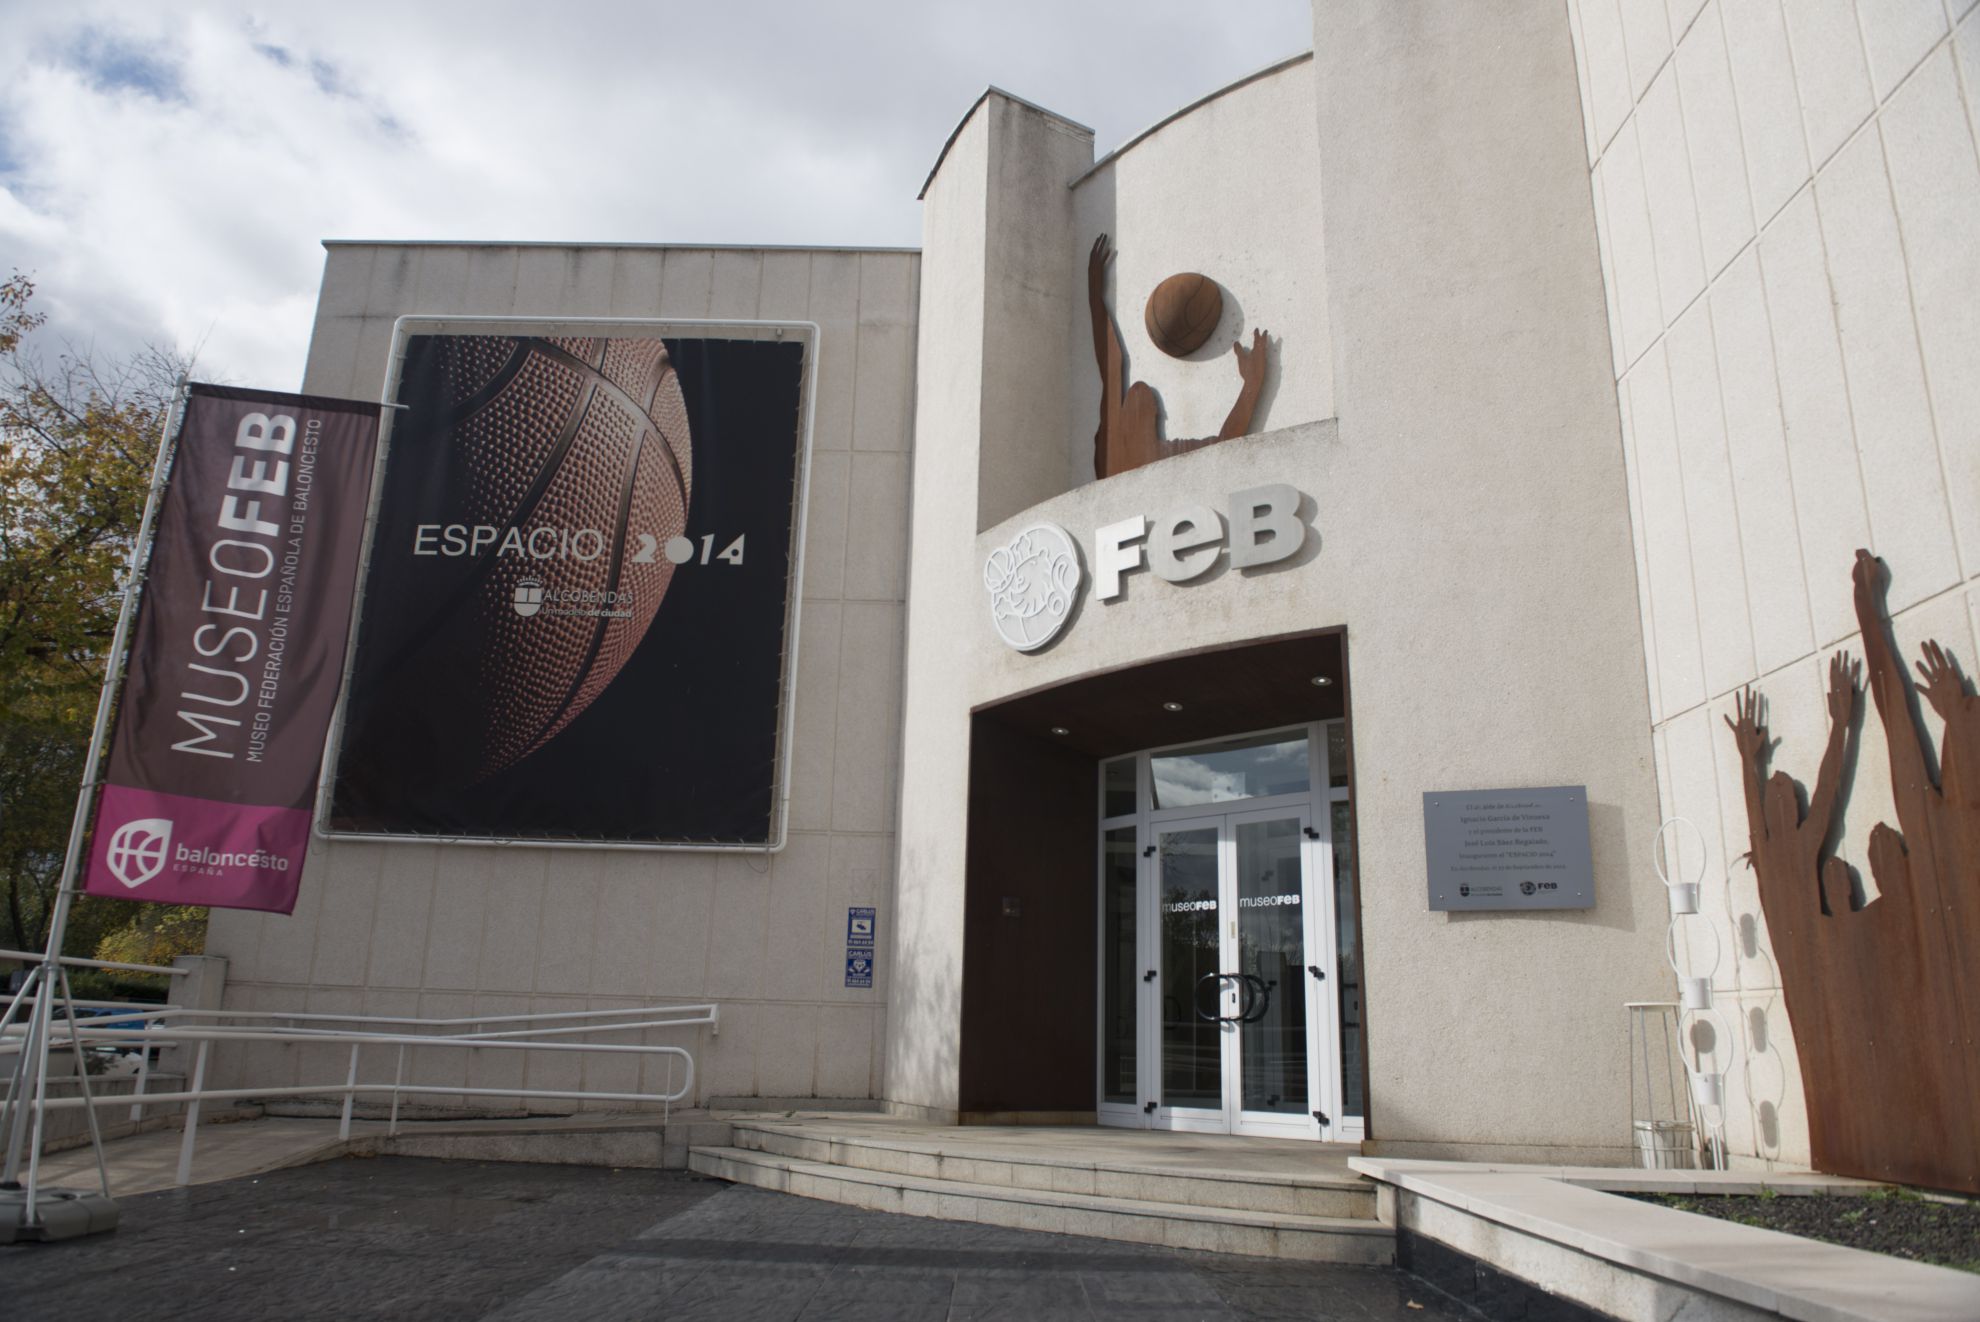 La ciudad de Pedro Ferrándiz, de Amaya Valdemoro, el deporte base y el Museo de la Federación Española de Baloncesto. Alcobendas entra en el Hall of Fame.